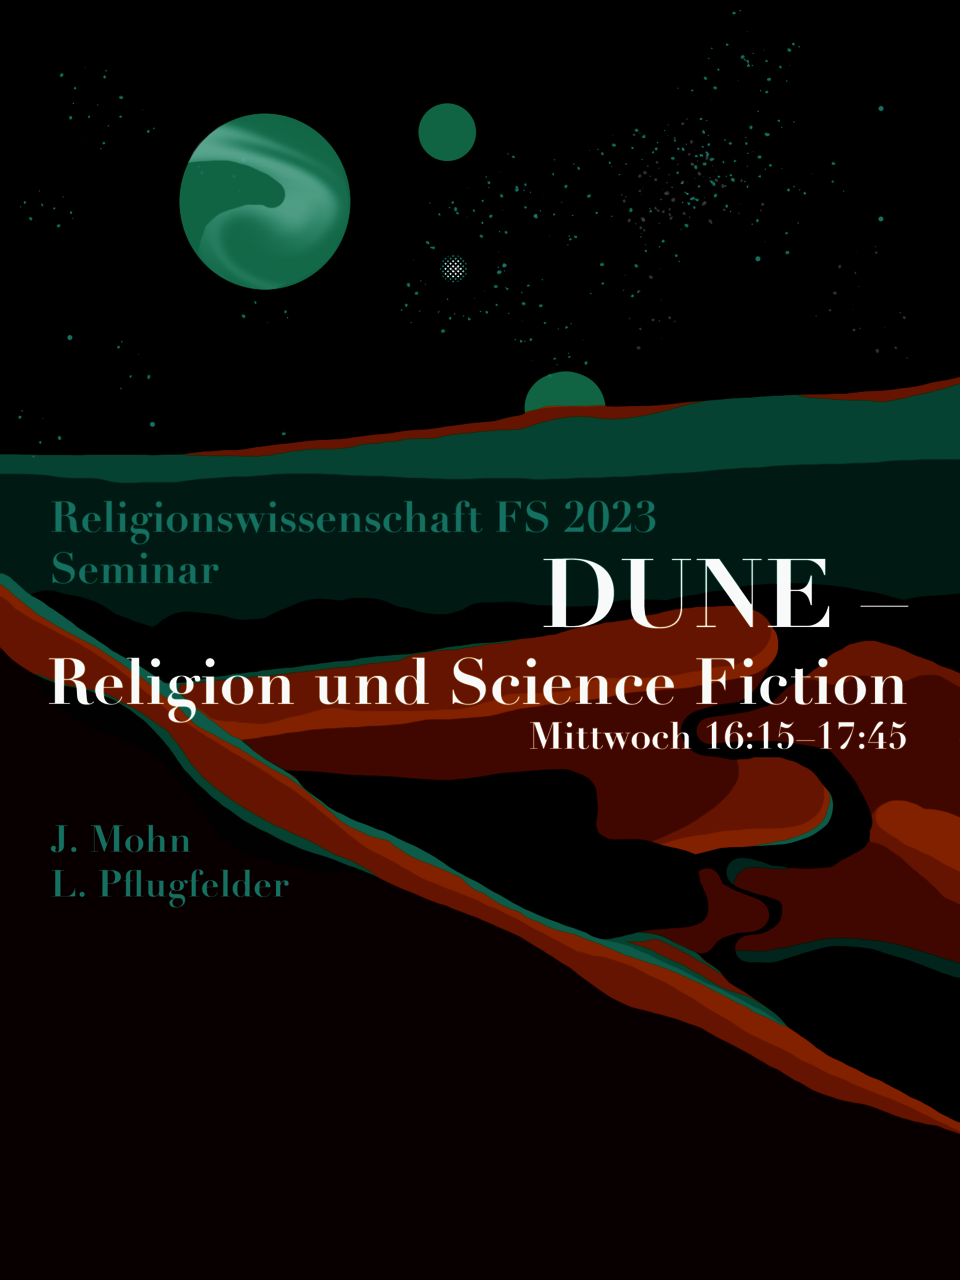 Fyler für das SEminar "Dune: REligion und Science Fiction" zeigt den Titel vor einer Wüstenlandschaft. Hinter dem Horizont sieht man Sterne und Planeten.